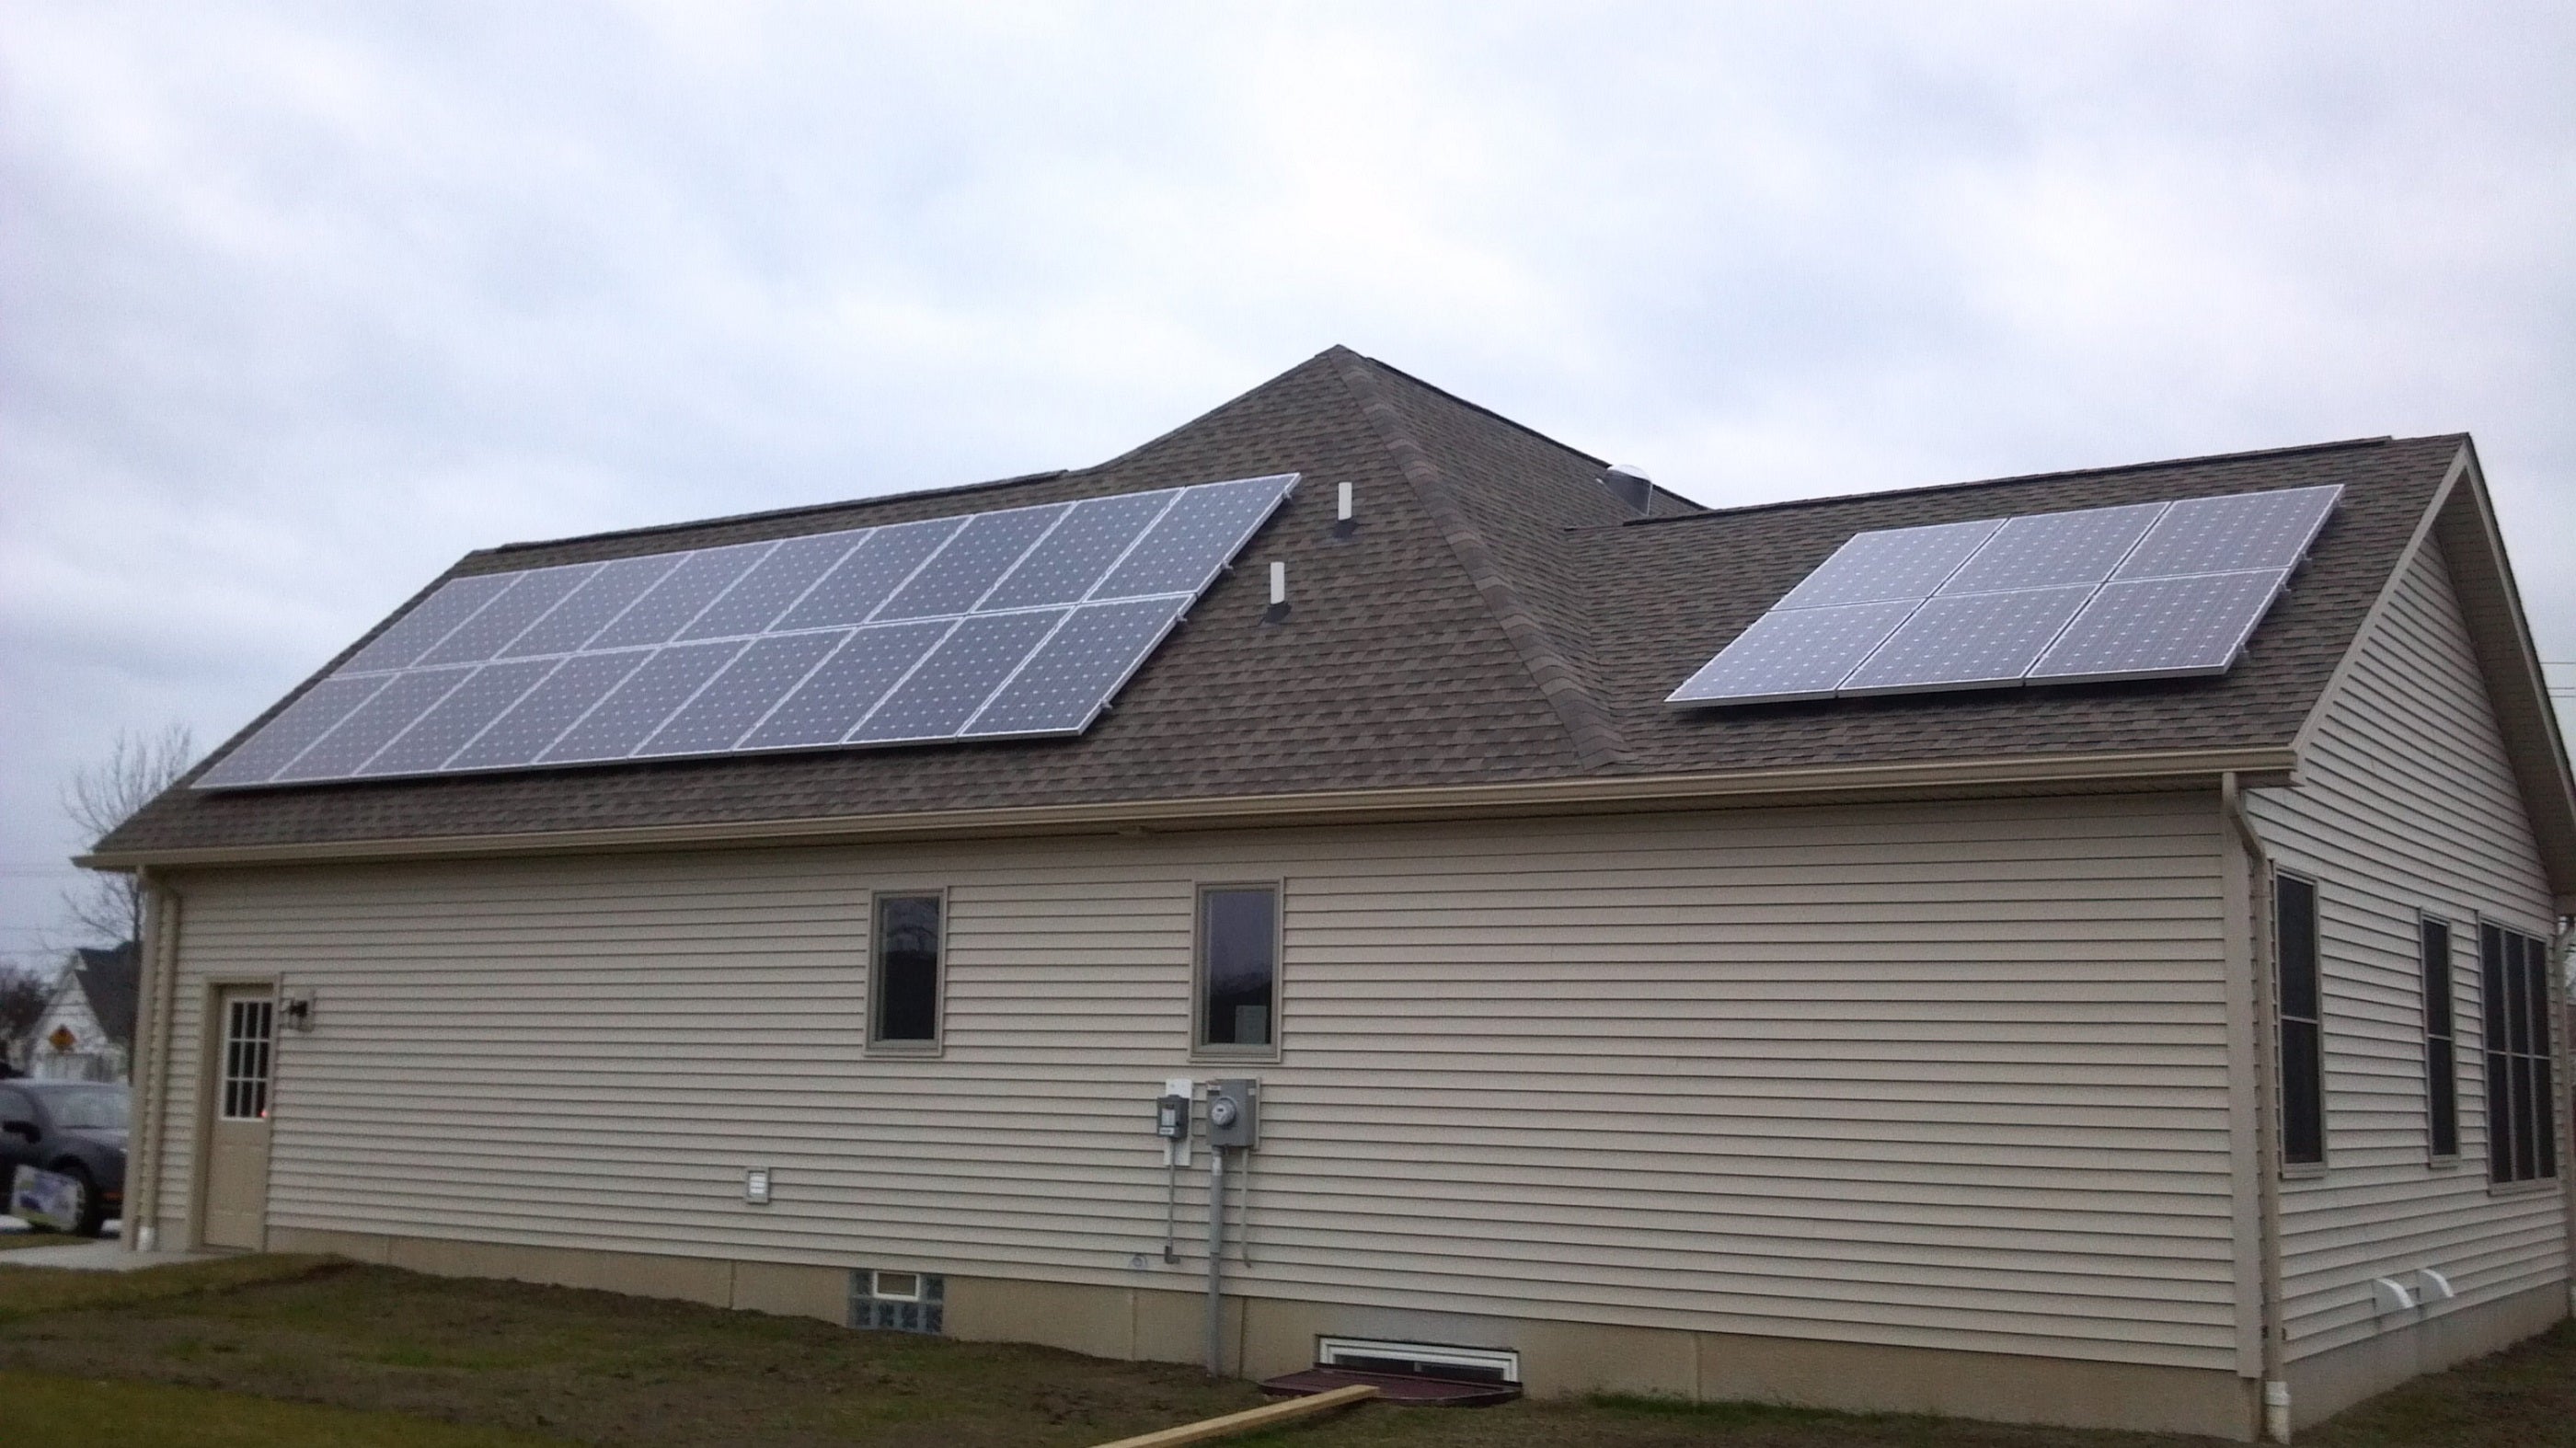 CIR Solar installation in Lancaster, NY